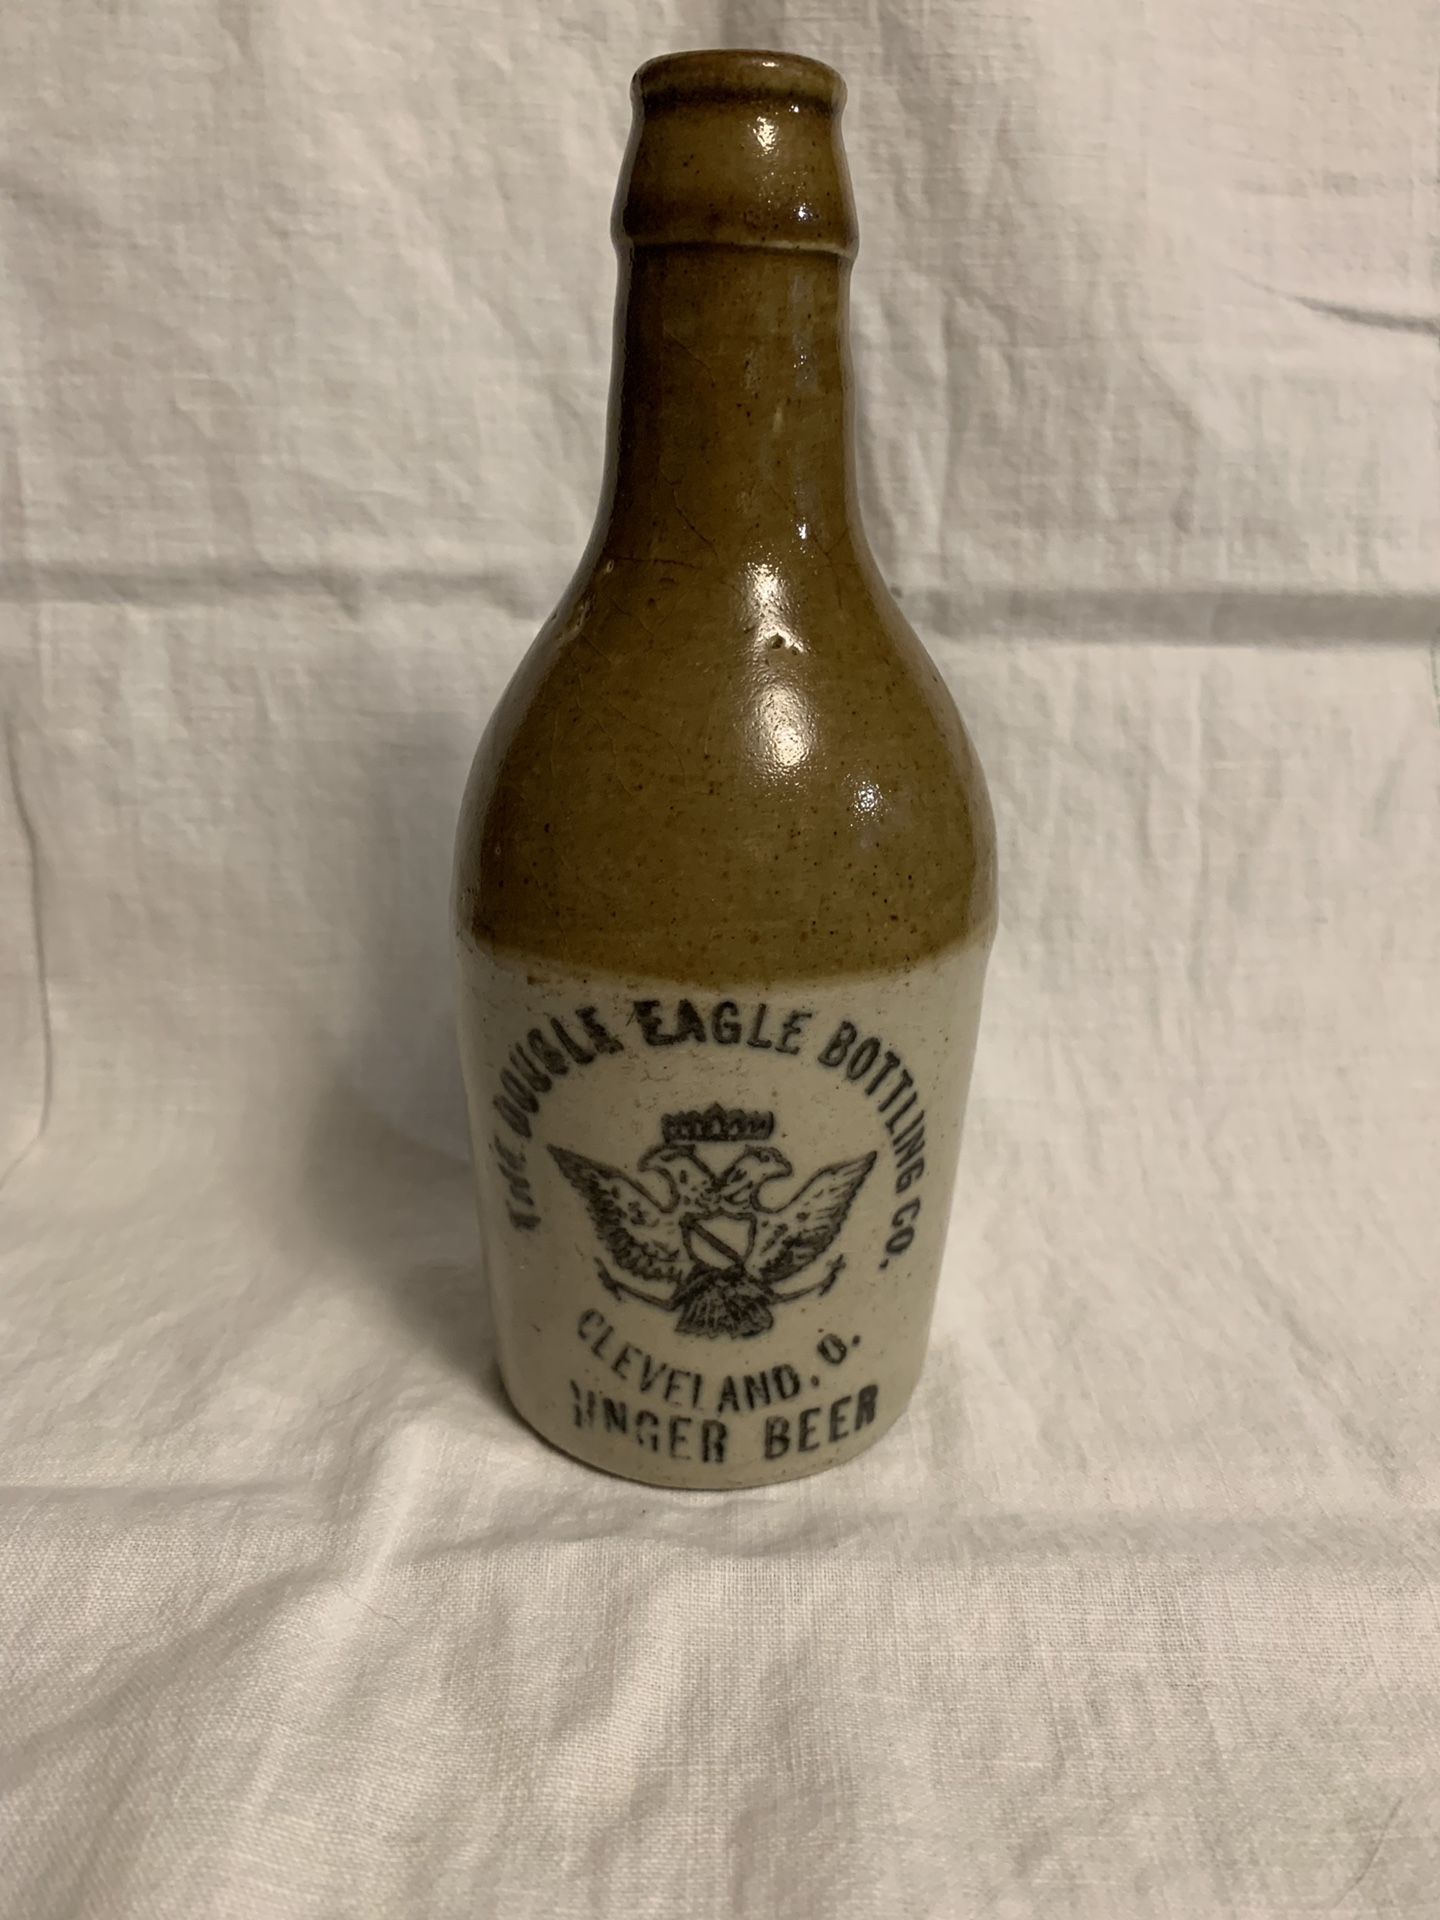 Antique The Double Eagle Bottle Co. Cleveland, Oh Ginger Beer Bottle (OBO)